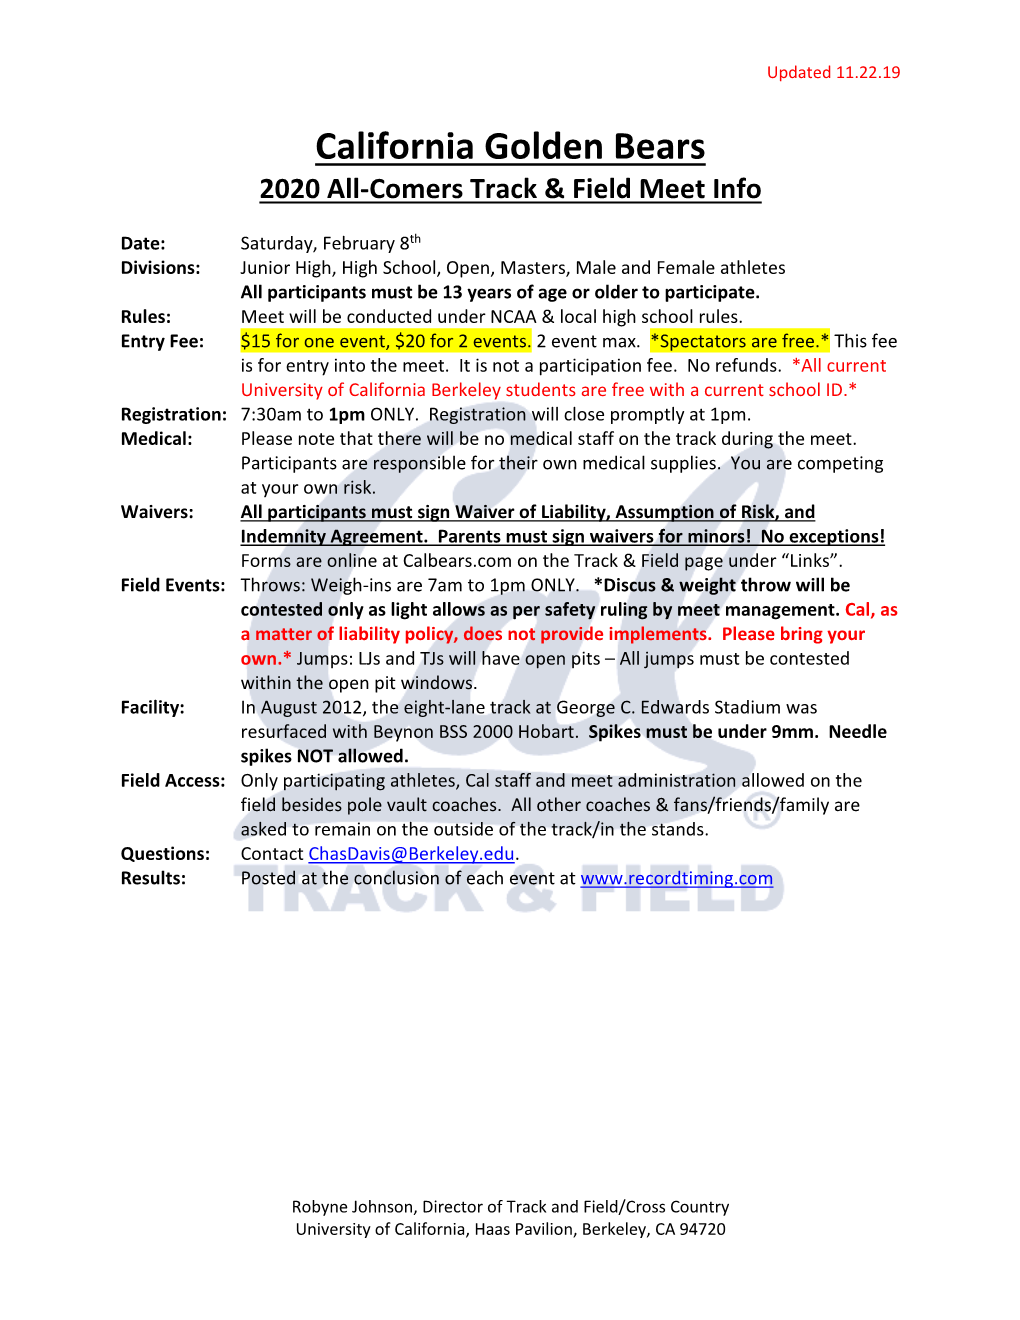 California Golden Bears 2020 All-Comers Track & Field Meet Info